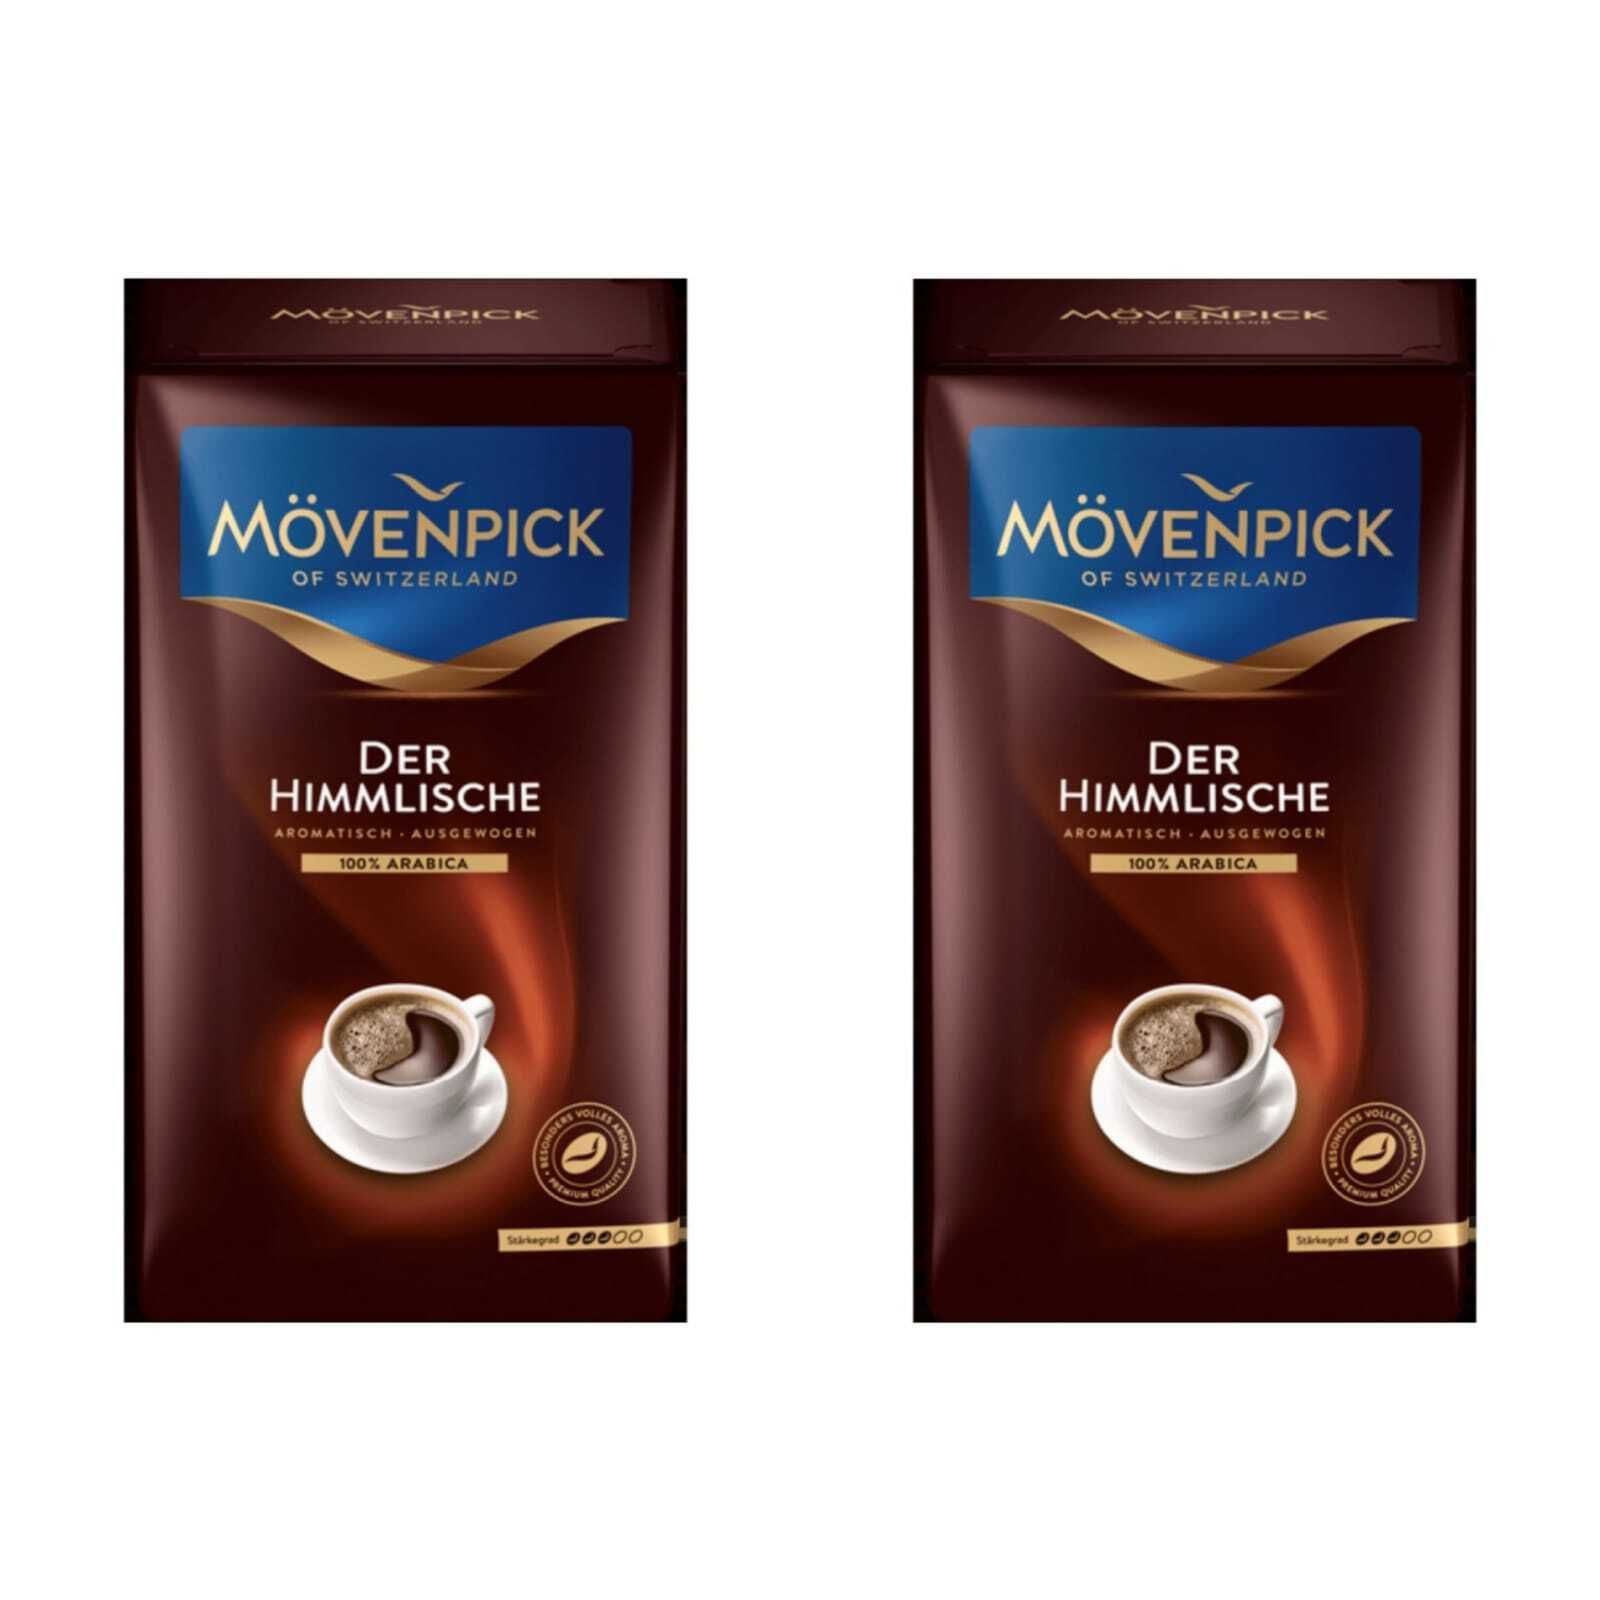 Кофе молотый 500г. Der himmlische кофе. Movenpick der himmlische 500 г. Кофе в зернах Movenpick der himmlische 500г зерно. Кофе Мовенпик молотый.